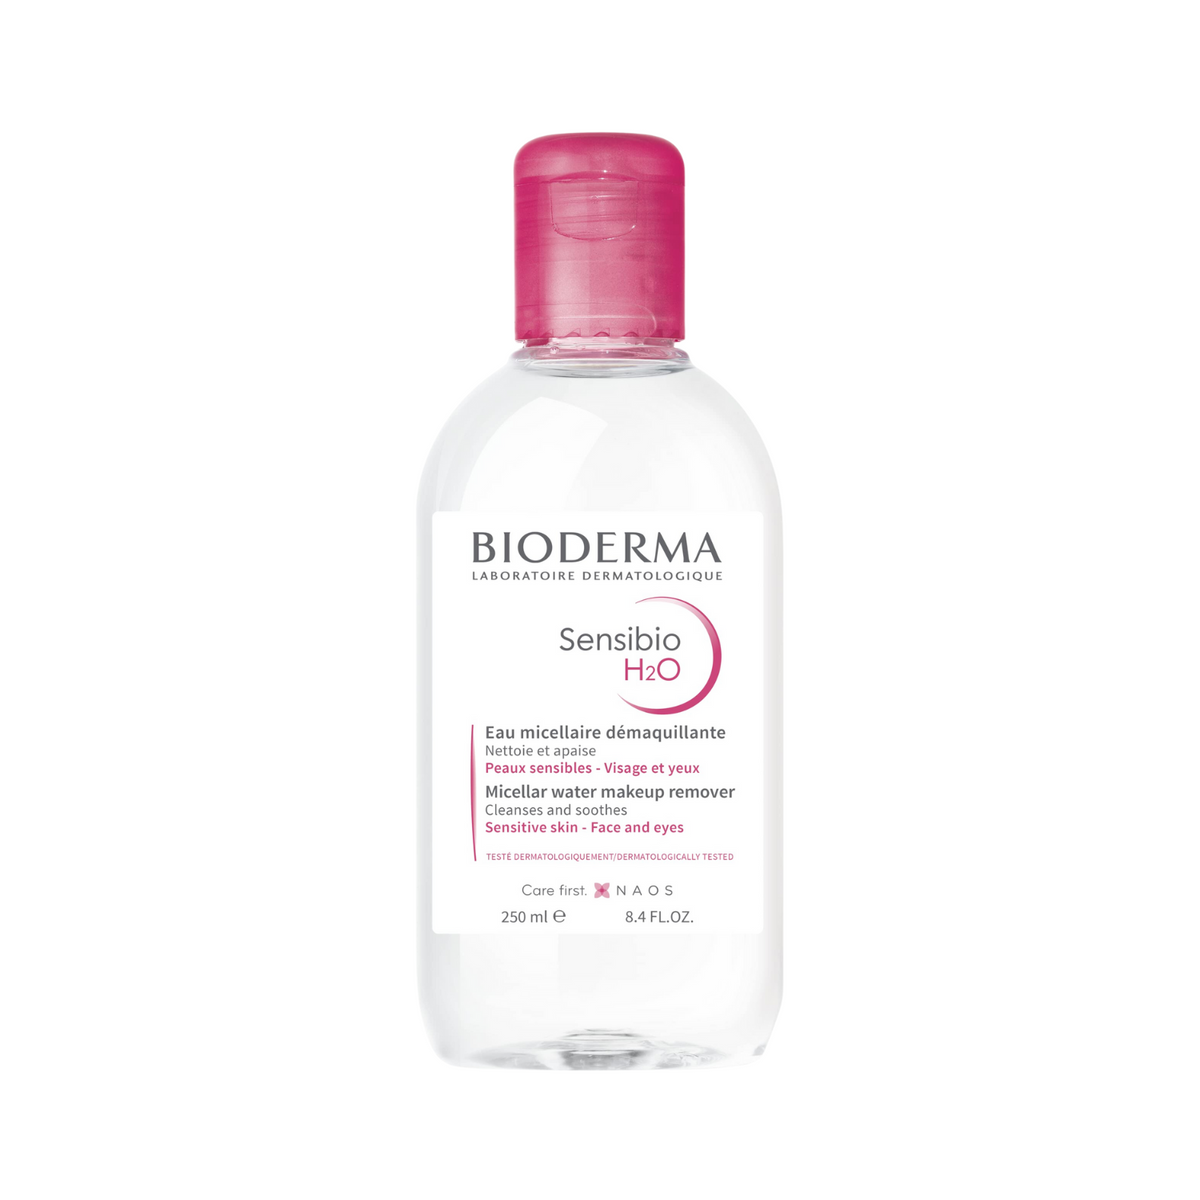 bioderma-sensibio-h2o-micellar-water-make-up-remover-250ml